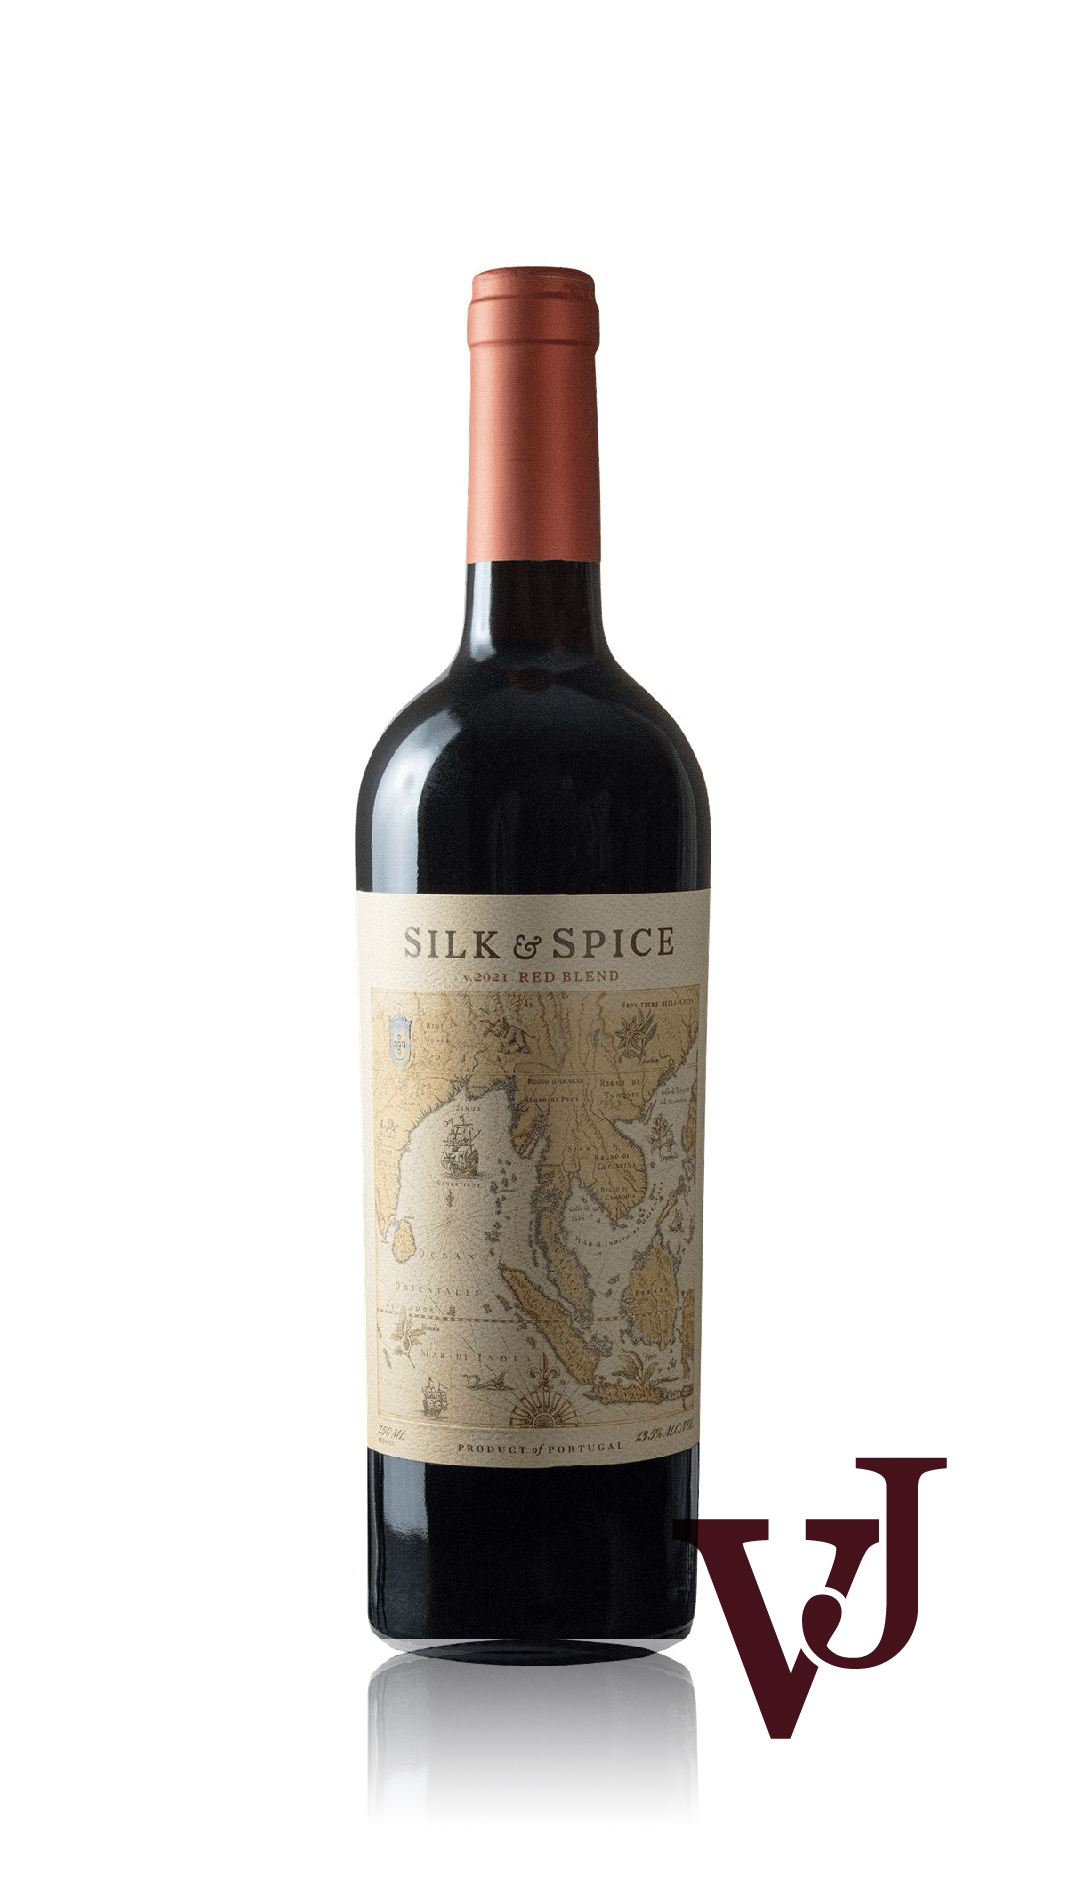 Rött vin - Silk & Spice Red Blend 2021 artikel nummer 7252001 från producenten Sogrape Vinhos från Portugal.